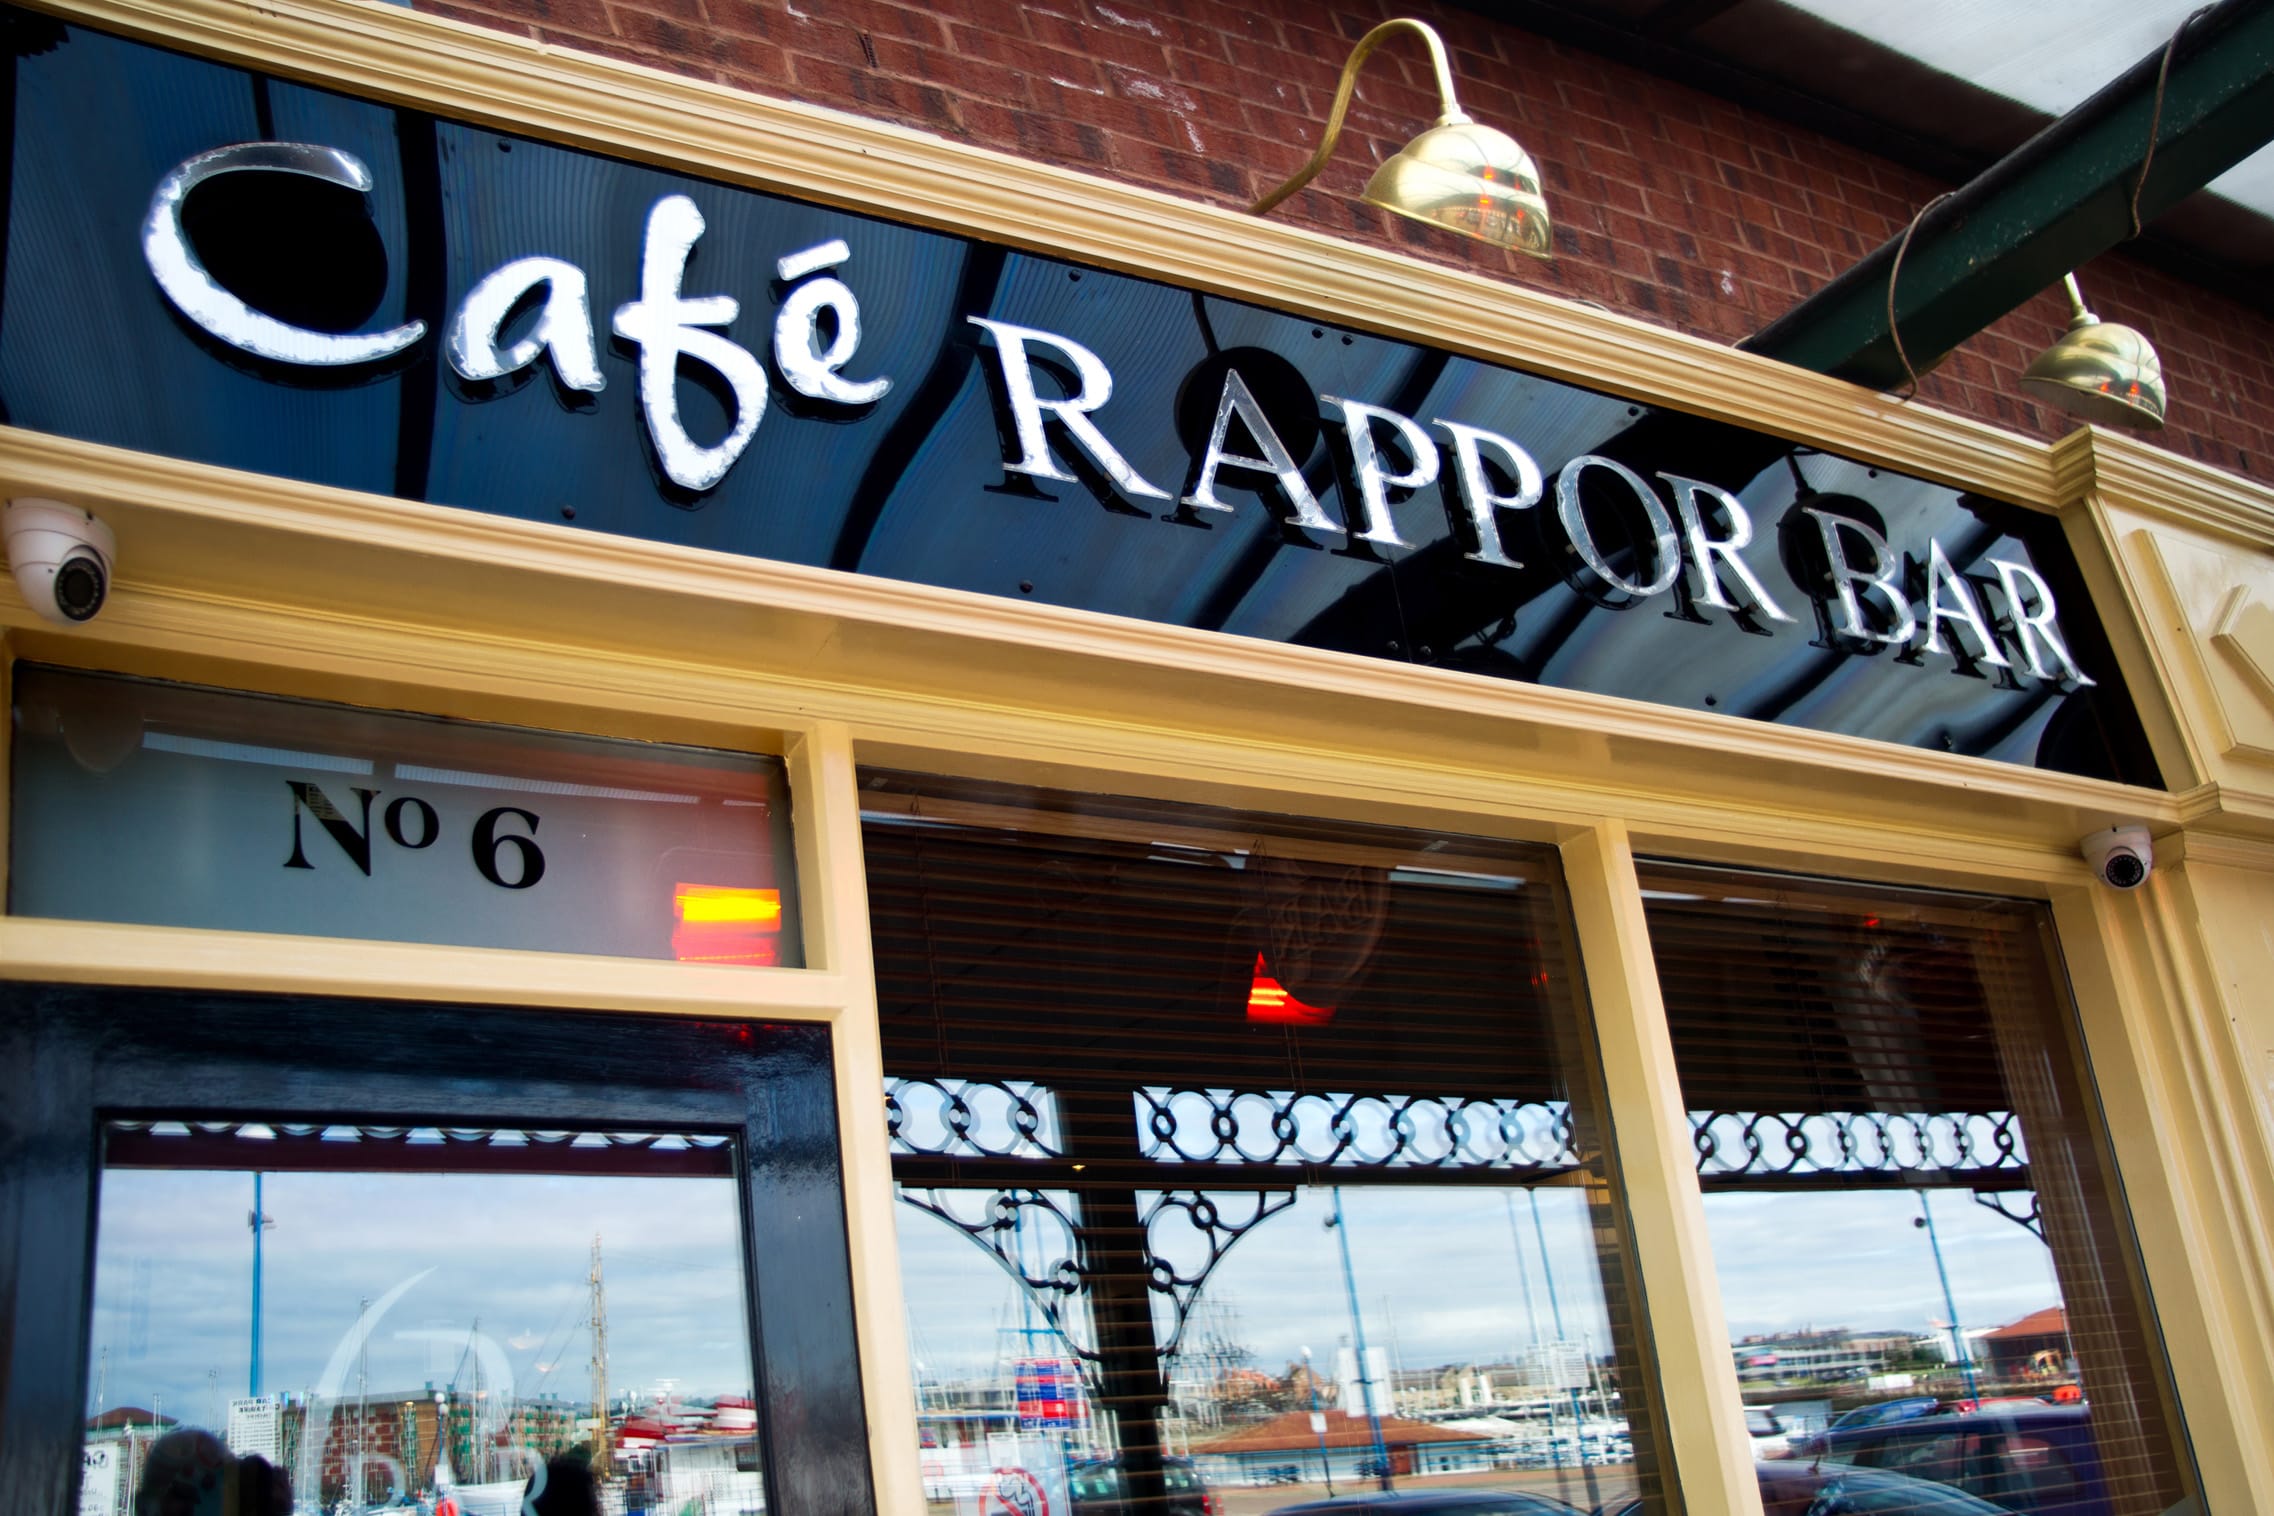 Cafe Rappor Bar